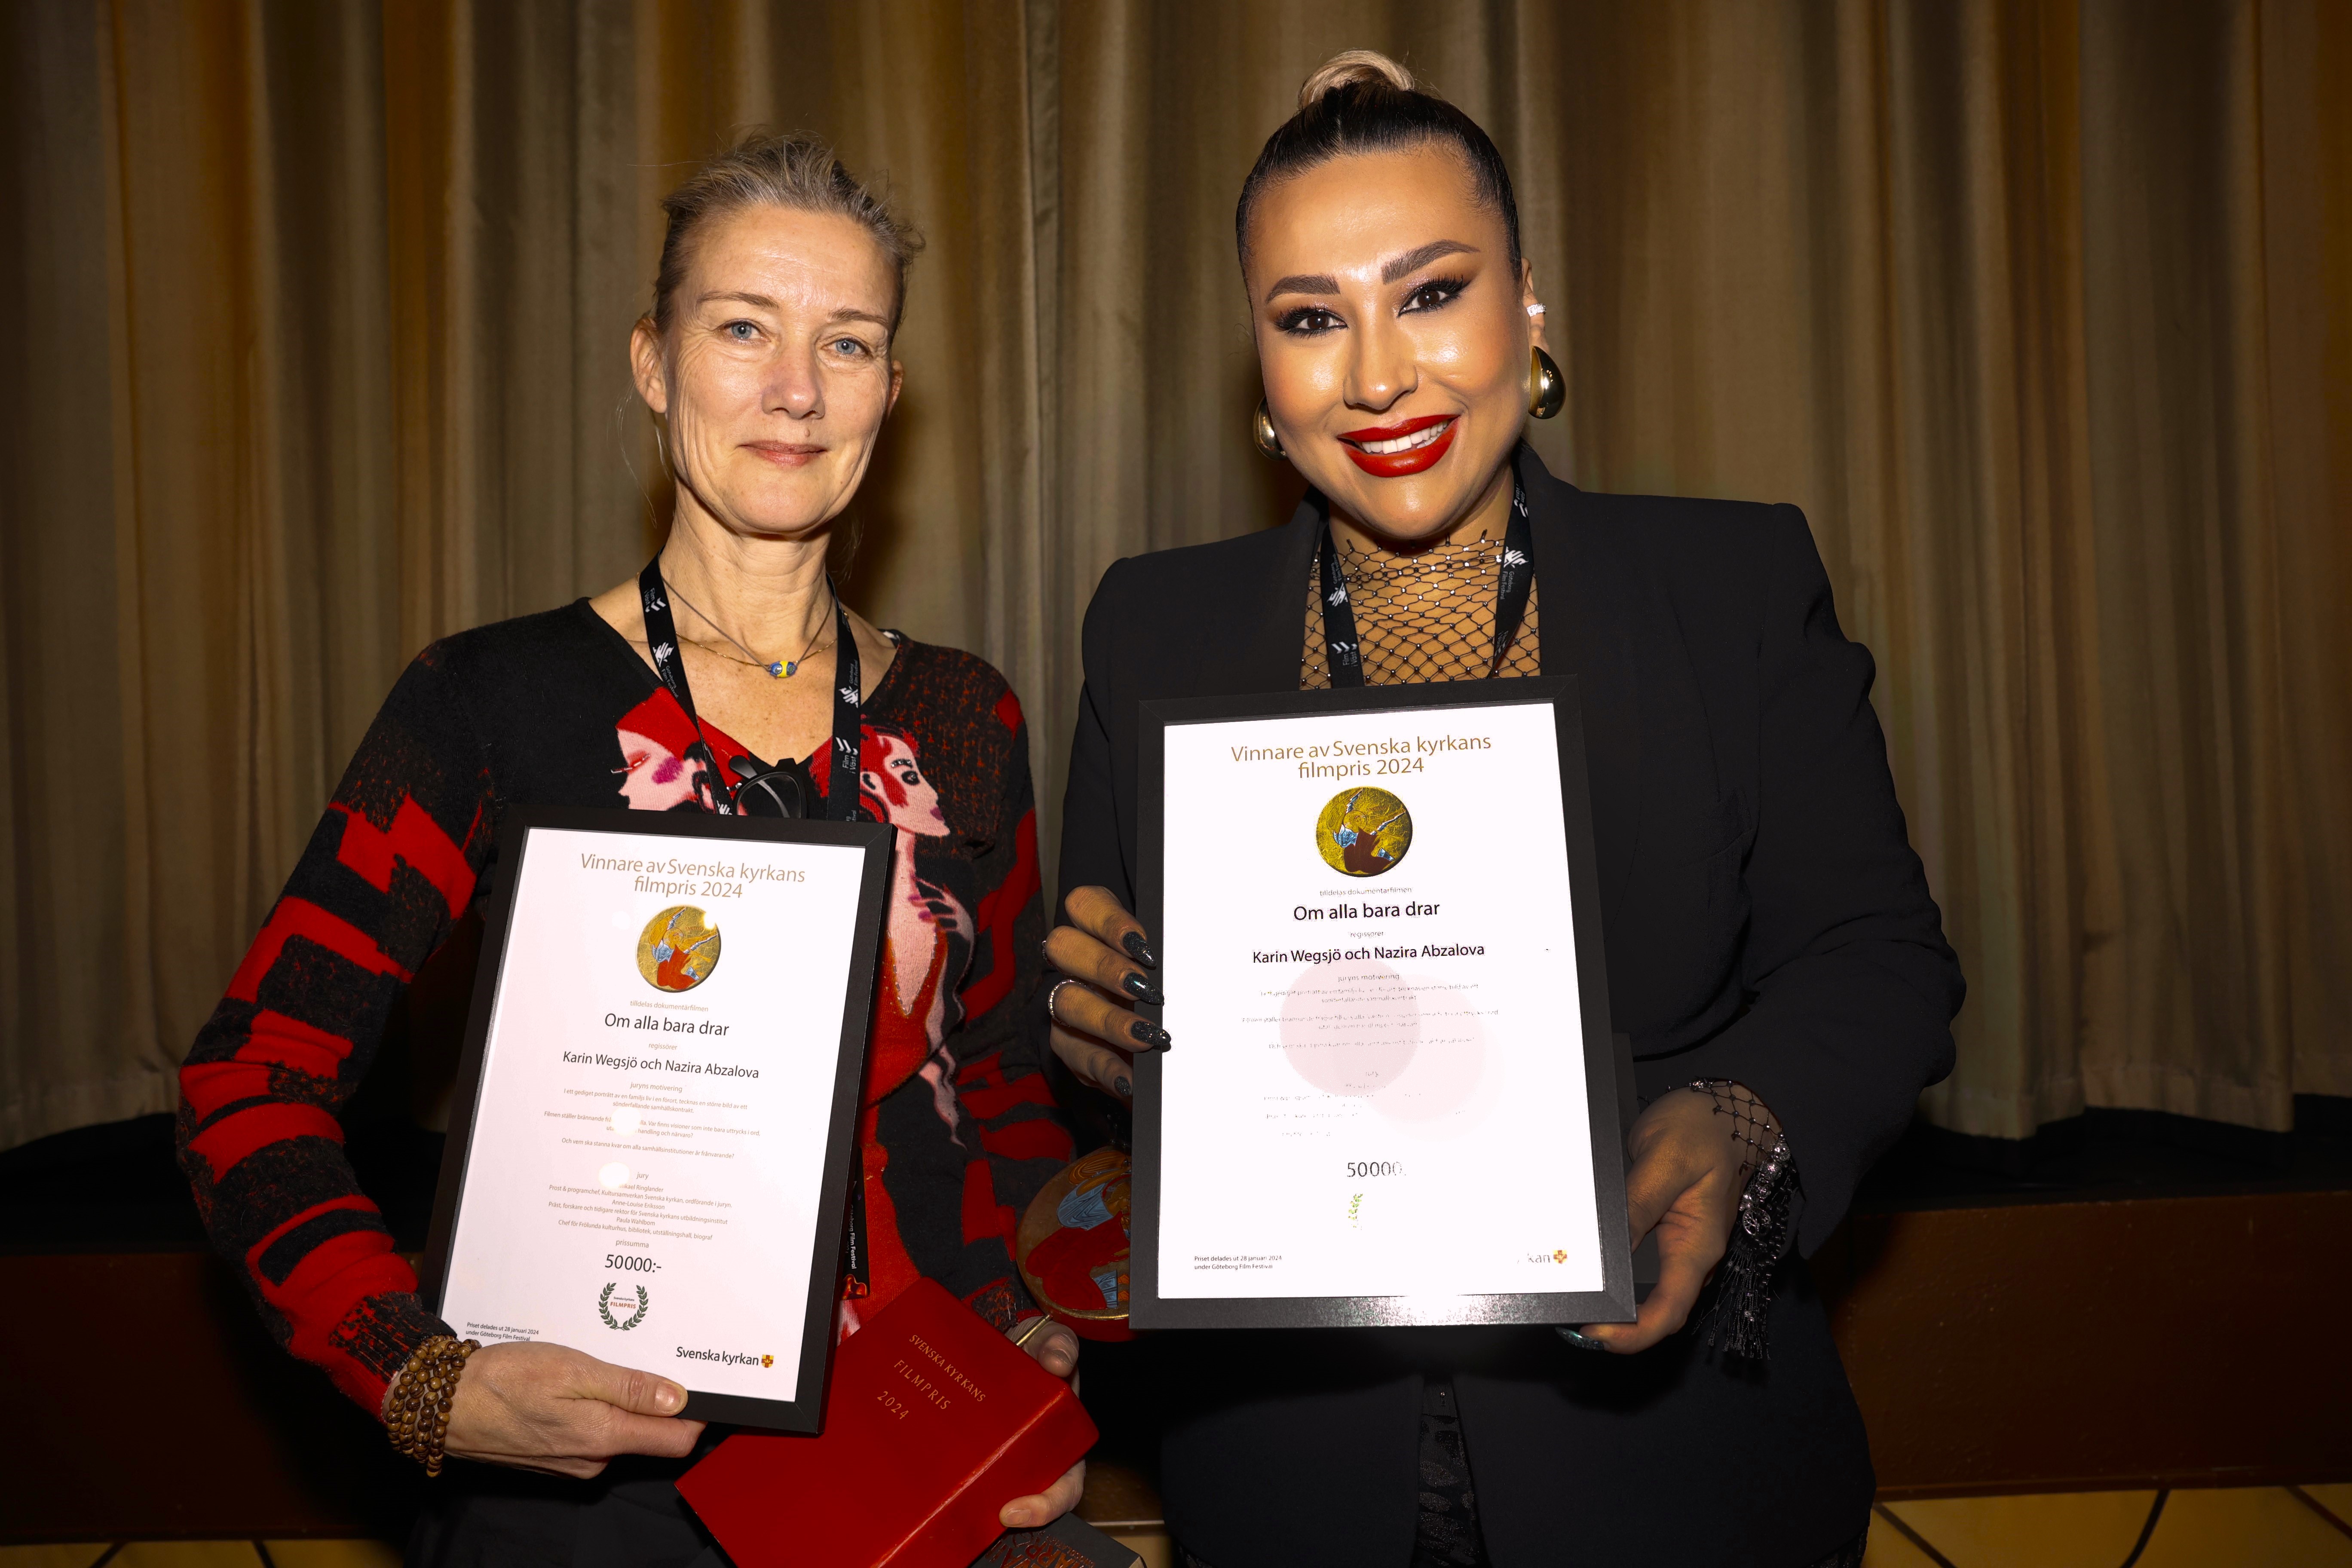 På bilden syns vinnarna av filmpriset, Karin Wegsjö och Nazira Abzalova, med varsitt diplom.